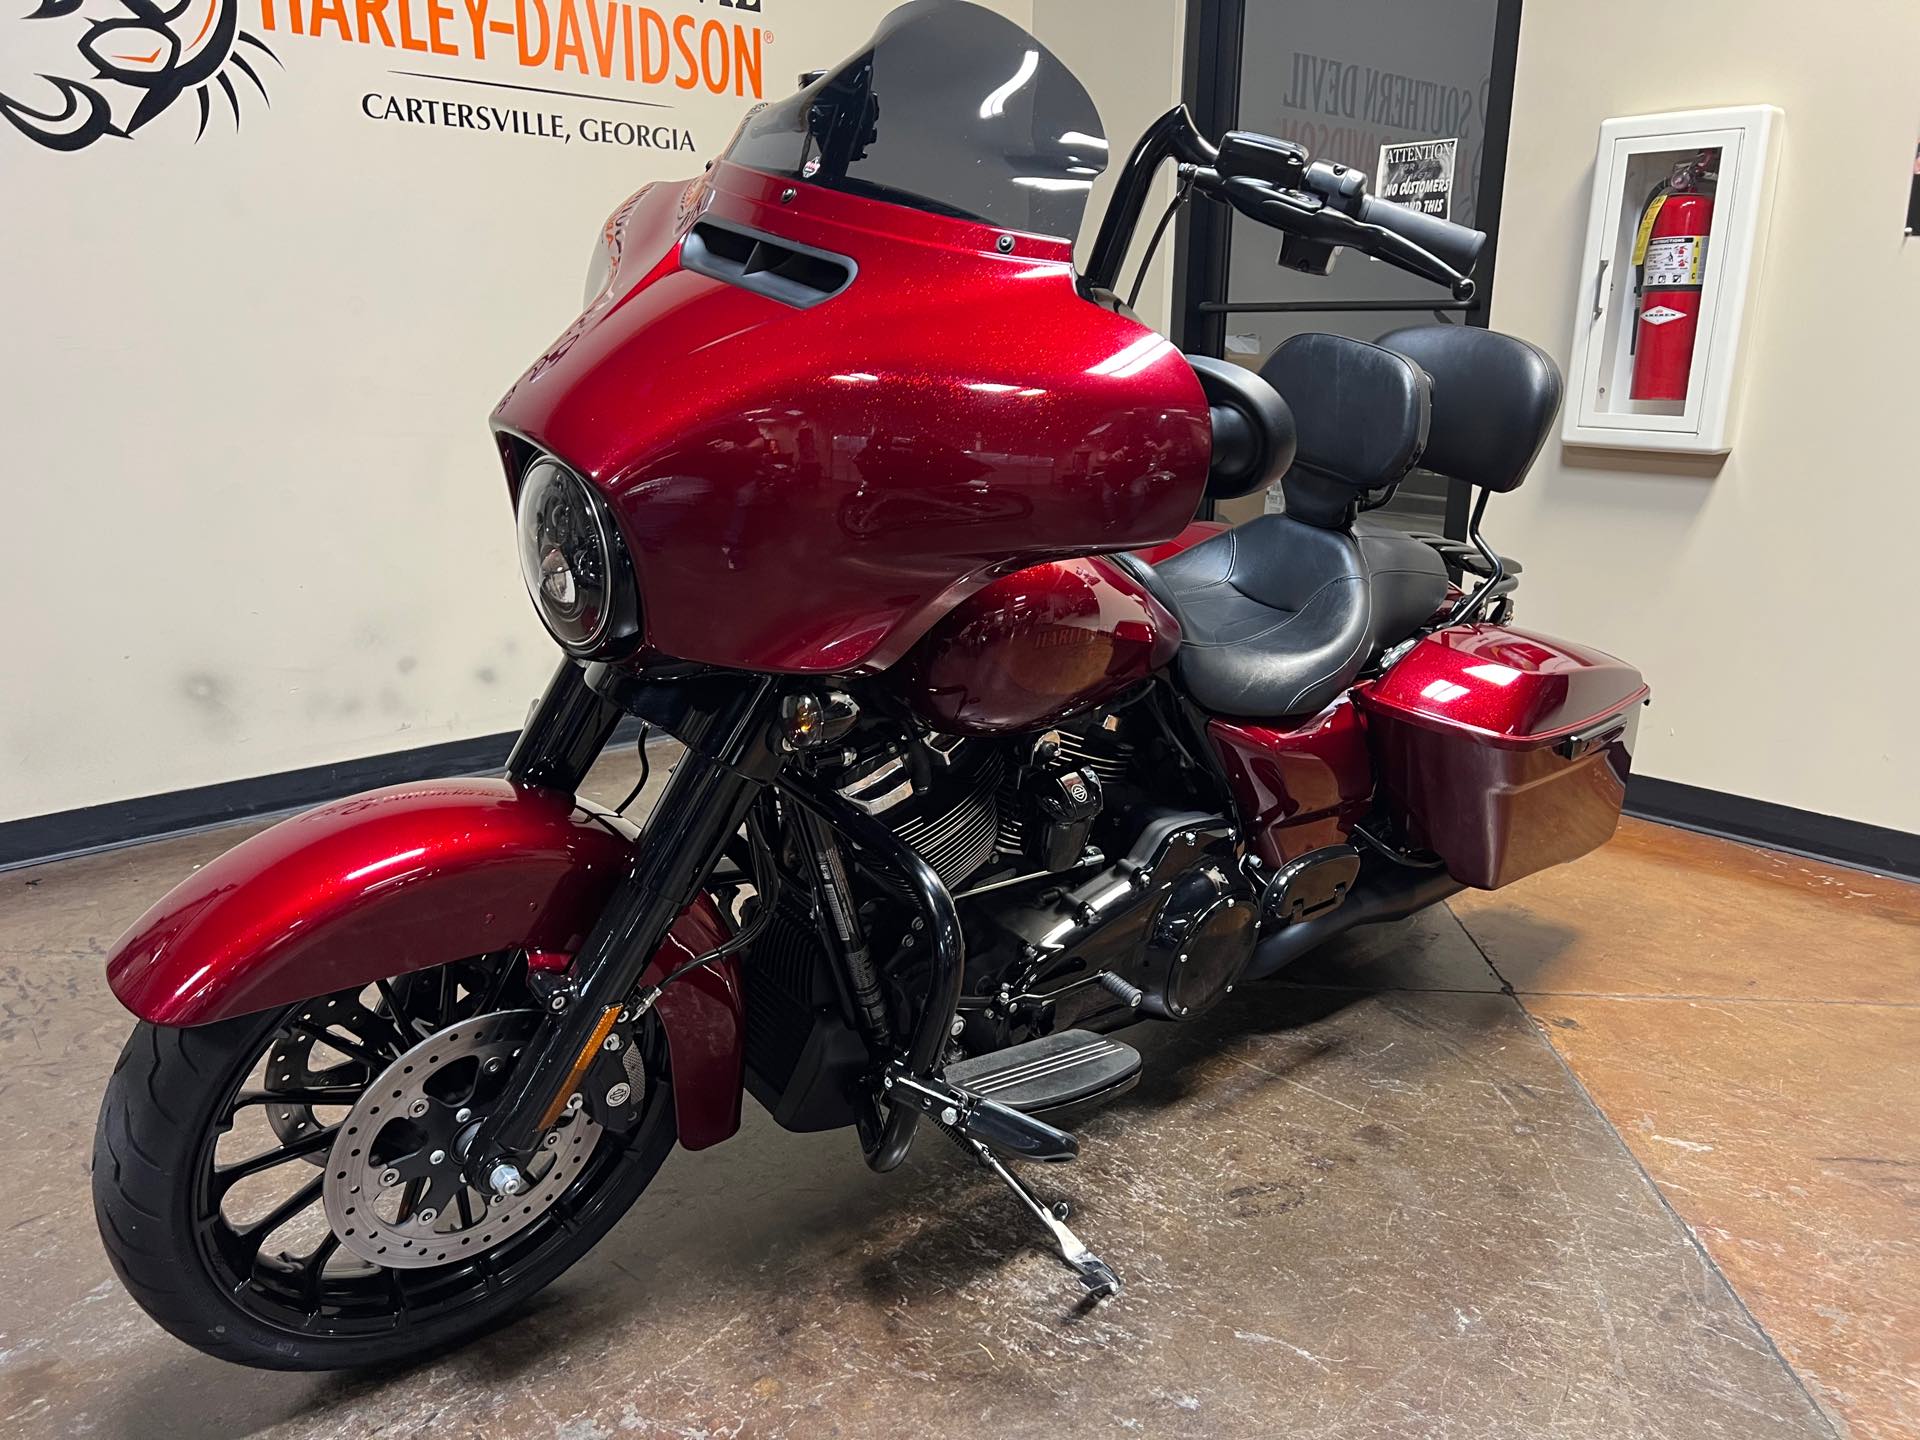 2018 Harley-Davidson Street Glide Special at Southern Devil Harley-Davidson